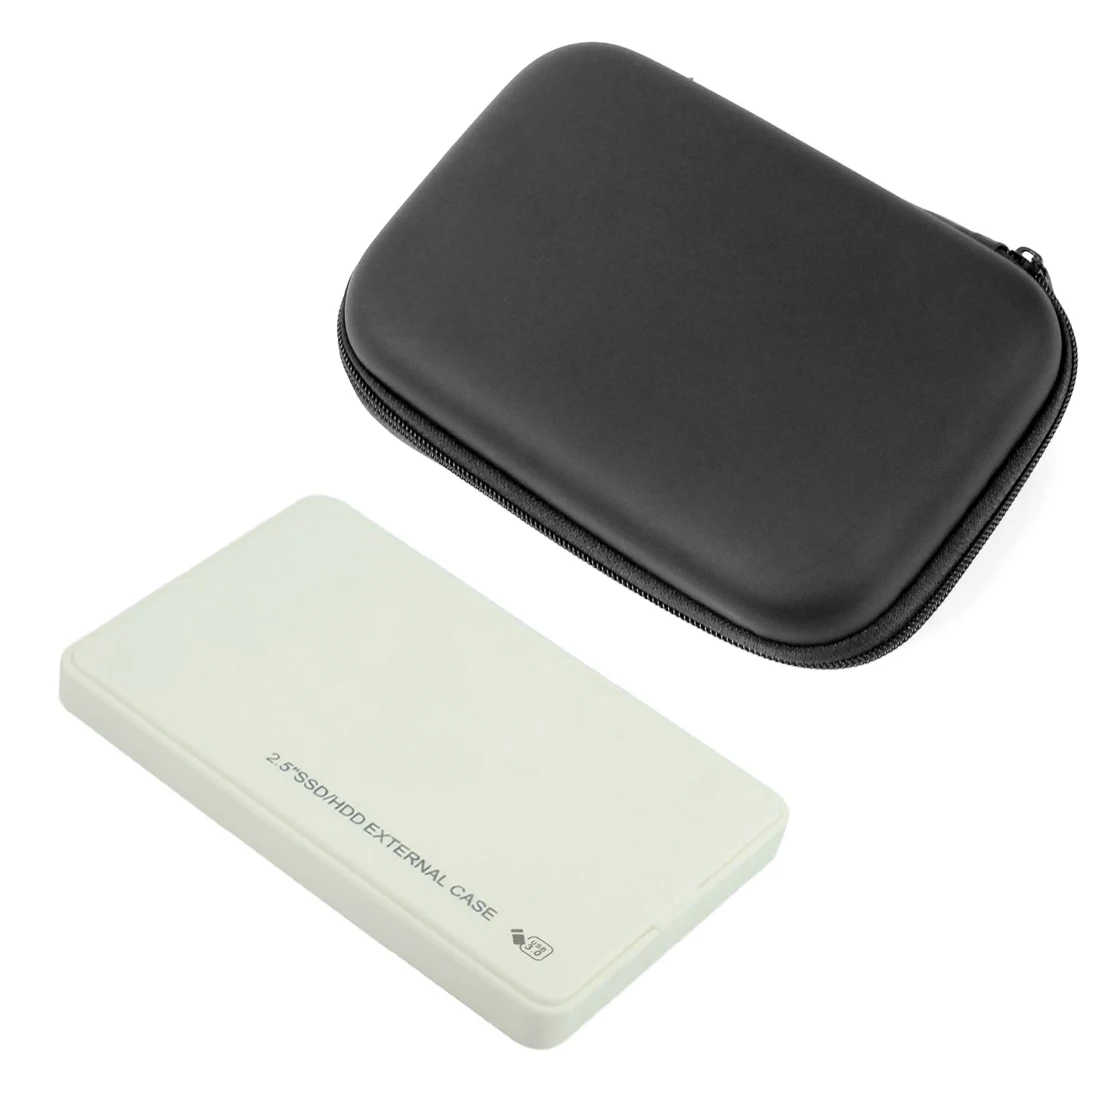 2," USB 3,0 SATA HD Box 5 Гбит/с HDD жесткий диск Внешний корпус чехол для передачи данных инструмент для резервного копирования с органайзером сумка для хранения - Цвет: White